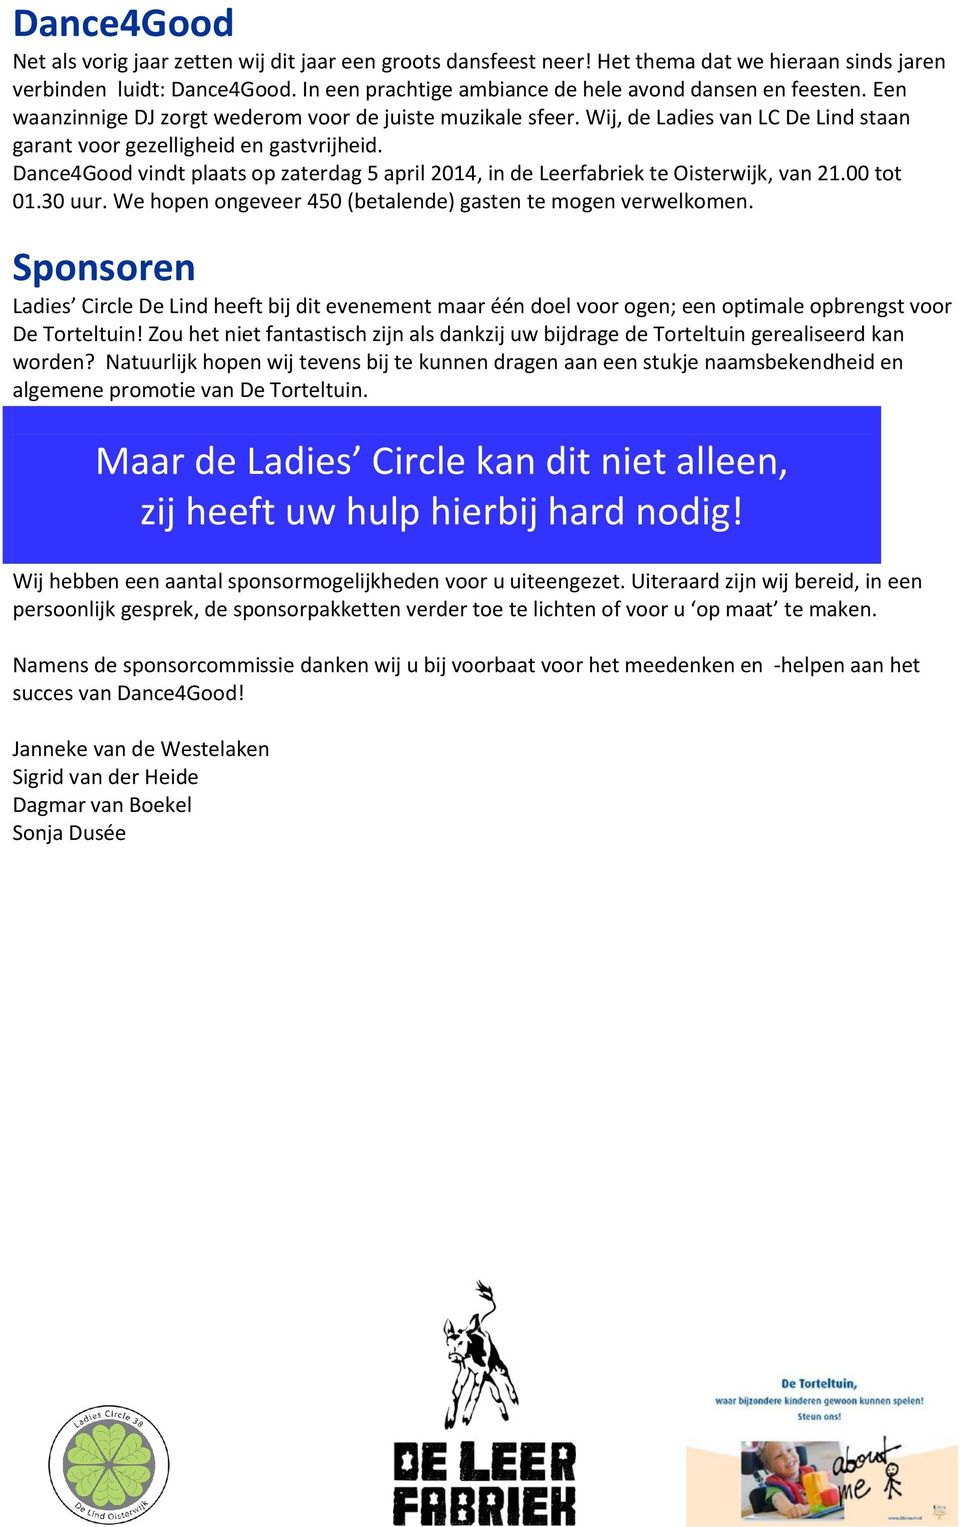 Dance4Good vindt plaats op zaterdag 5 april 2014, in de Leerfabriek te Oisterwijk, van 21.00 tot 01.30 uur. We hopen ongeveer 450 (betalende) gasten te mogen verwelkomen.